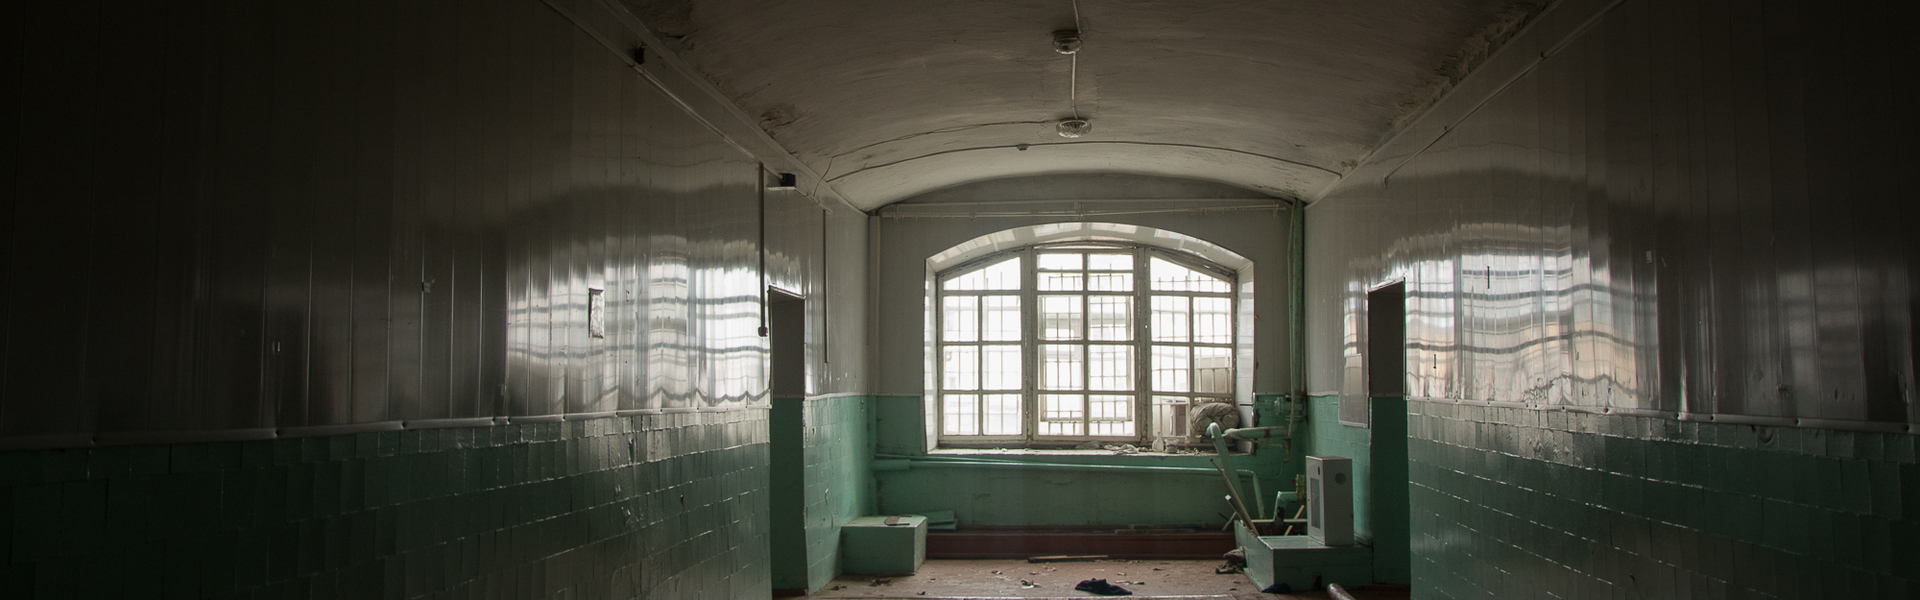 Александровский централ: винзавод, каторжная тюрьма и психбольница